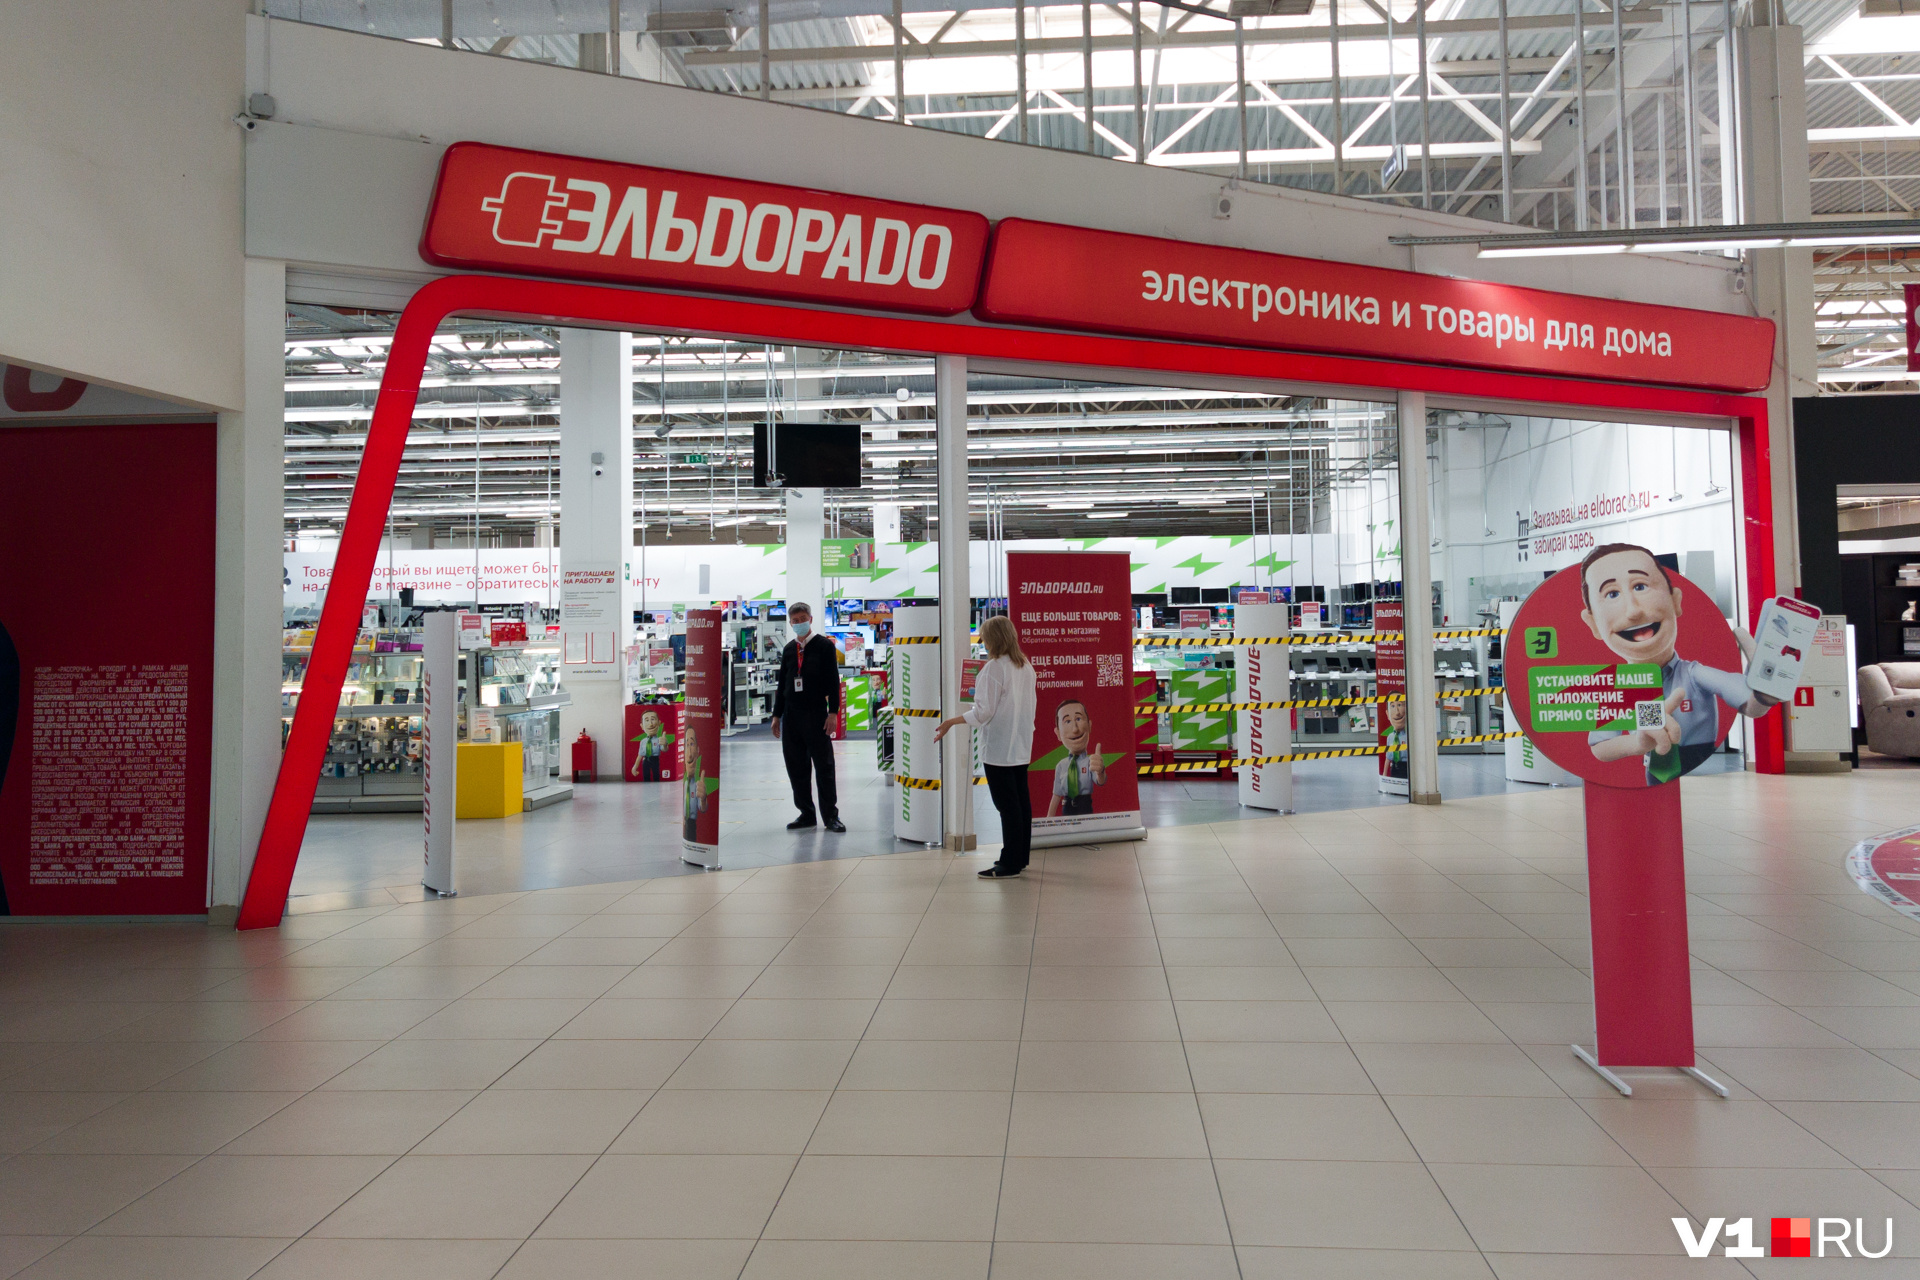 Сотрудники гипермаркета «Эльдорадо» сообщили о том, что склады магазинов этой торговой сети до сих пор пополняются достаточным количеством техники разных торговых марок